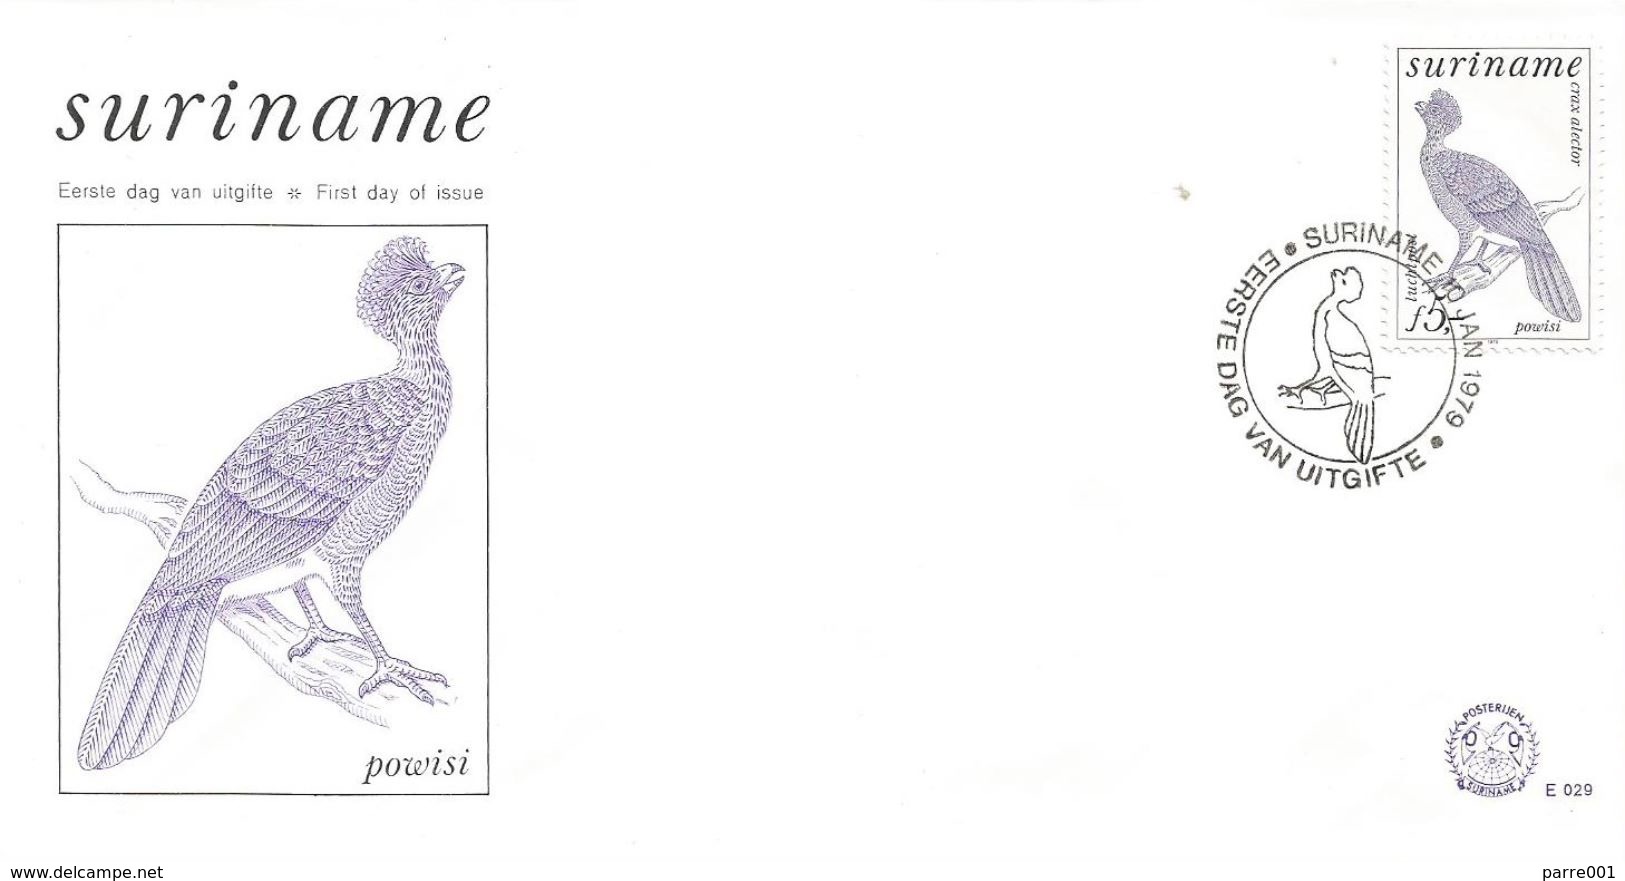 Surinam Suriname 1979 Paramaribo Crax Alector Bird FDC Cover - Coucous, Touracos